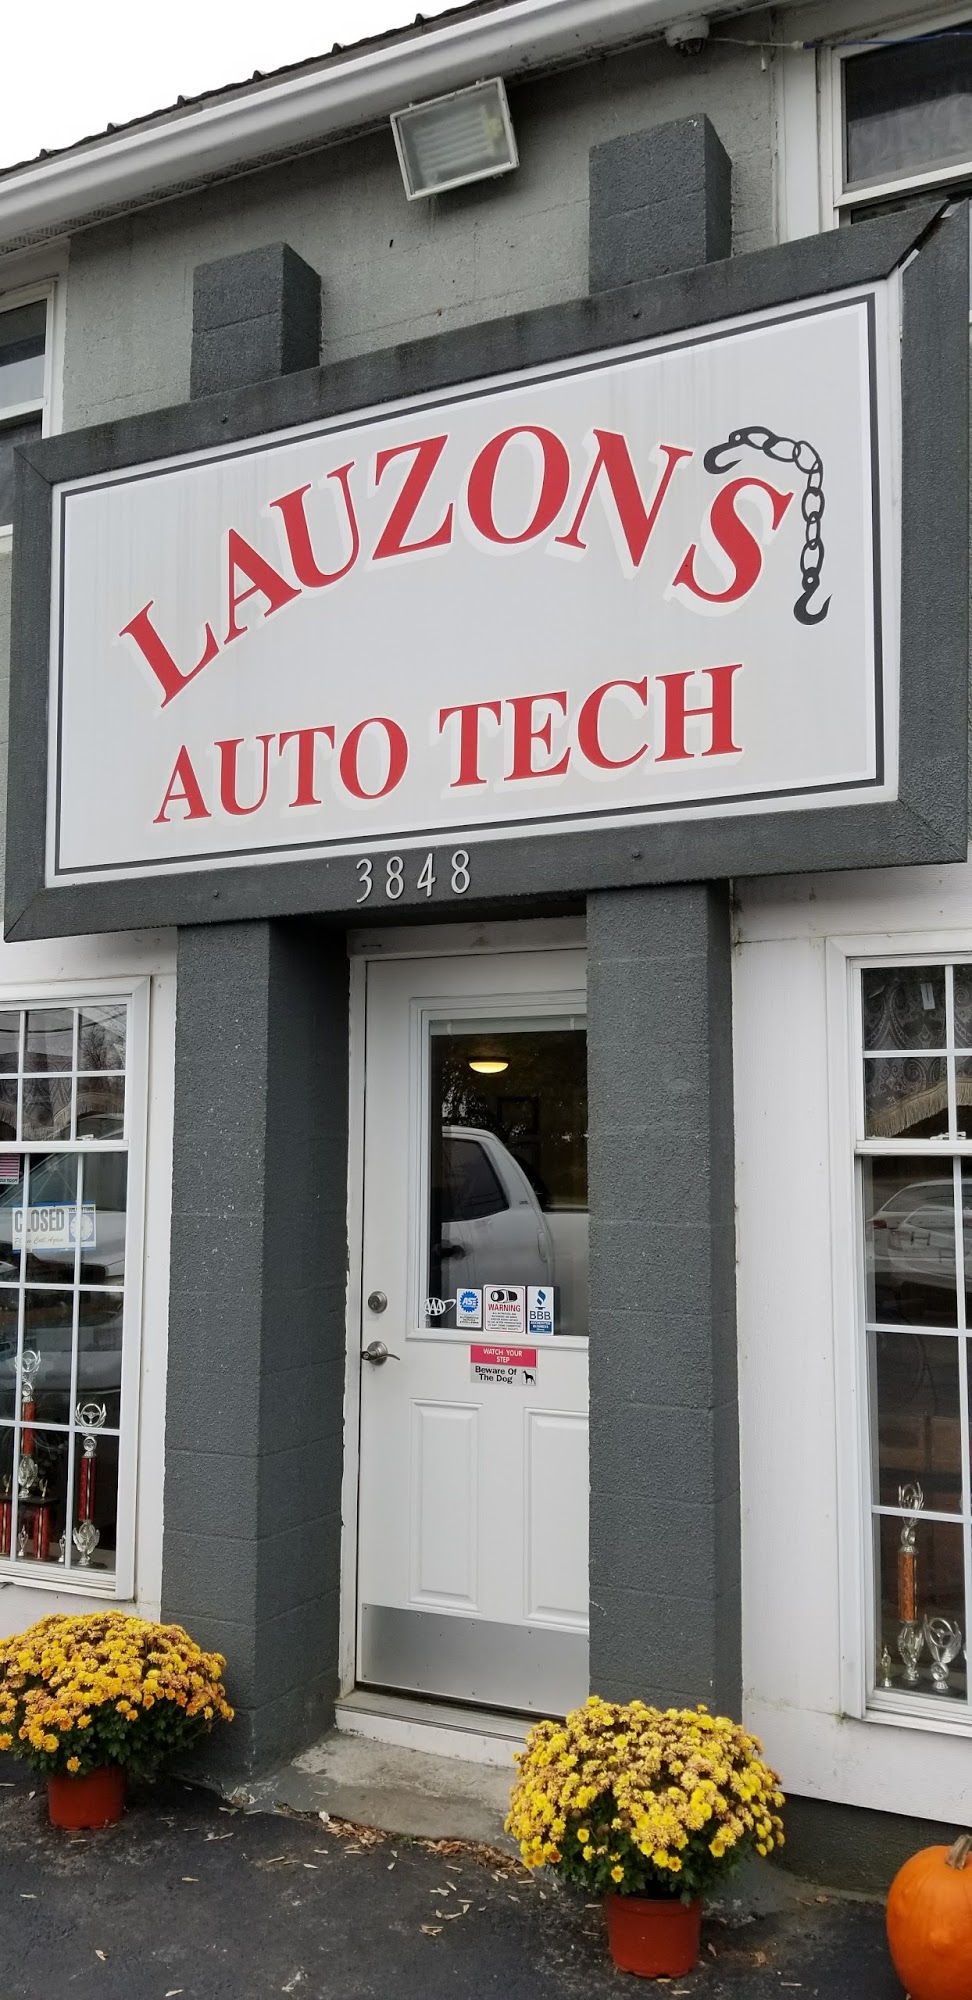 Lauzon's Auto Tech Towing